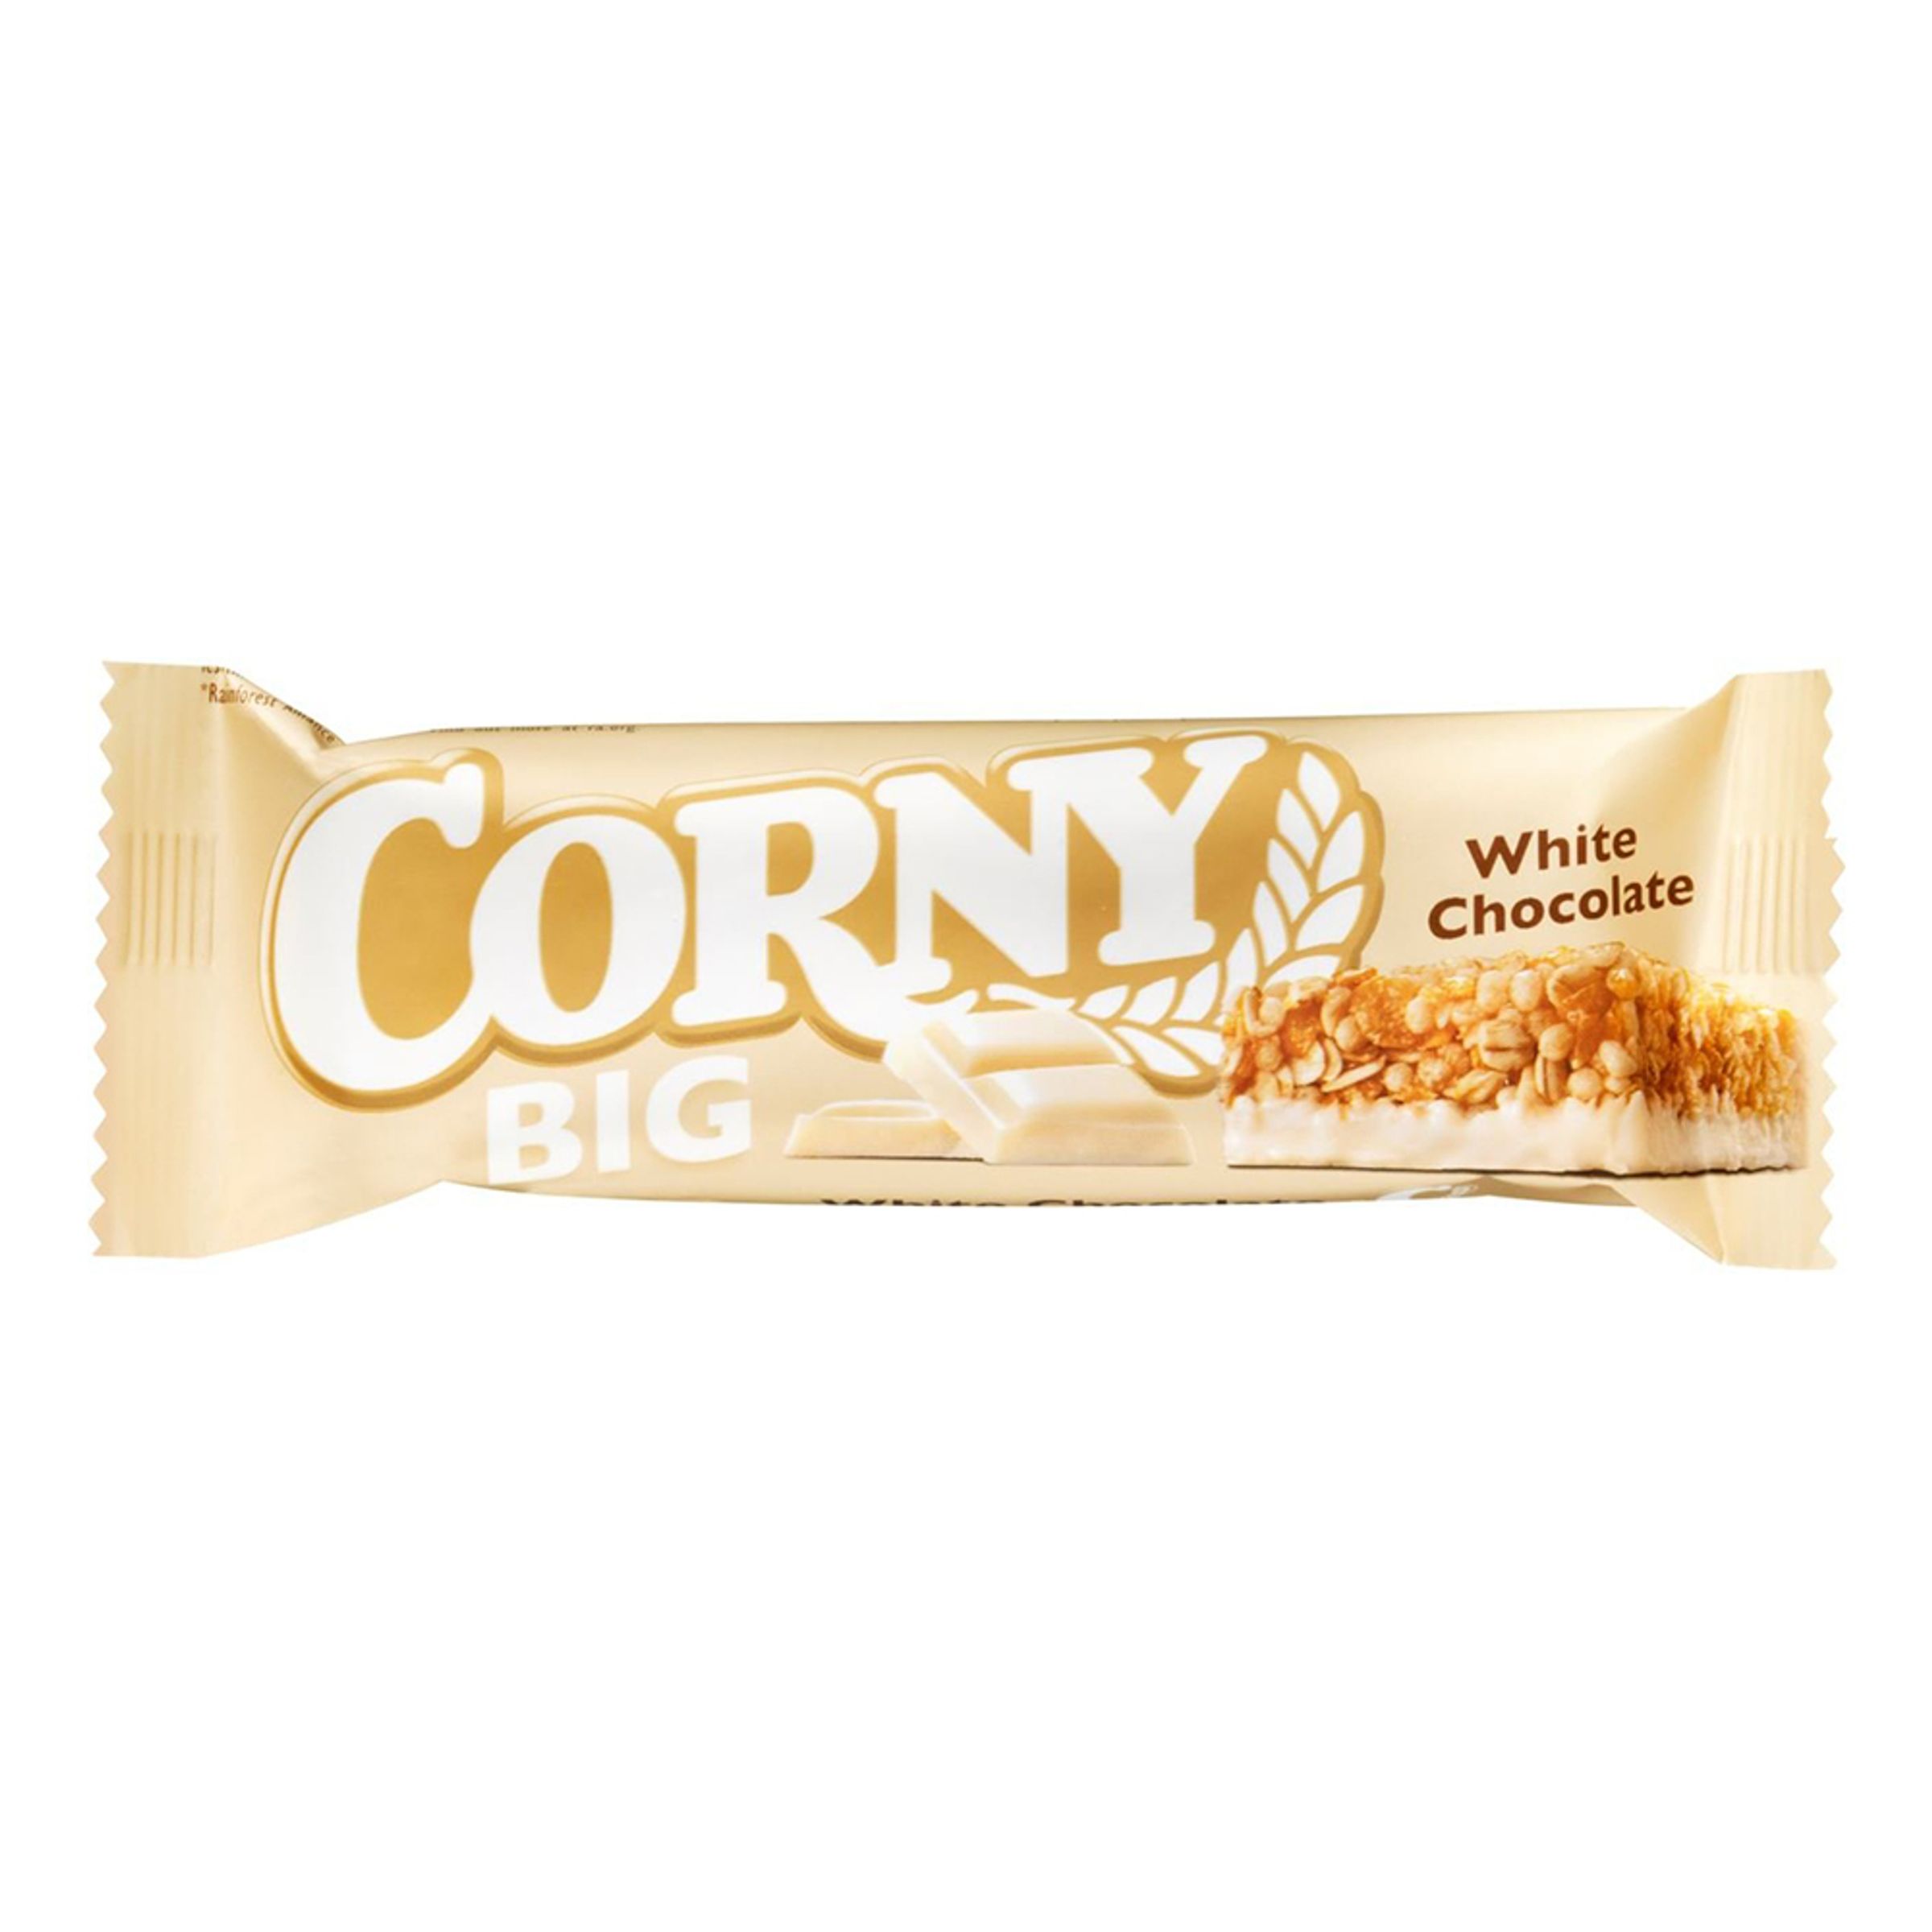 Corny Big White Chocolate - 1-pack